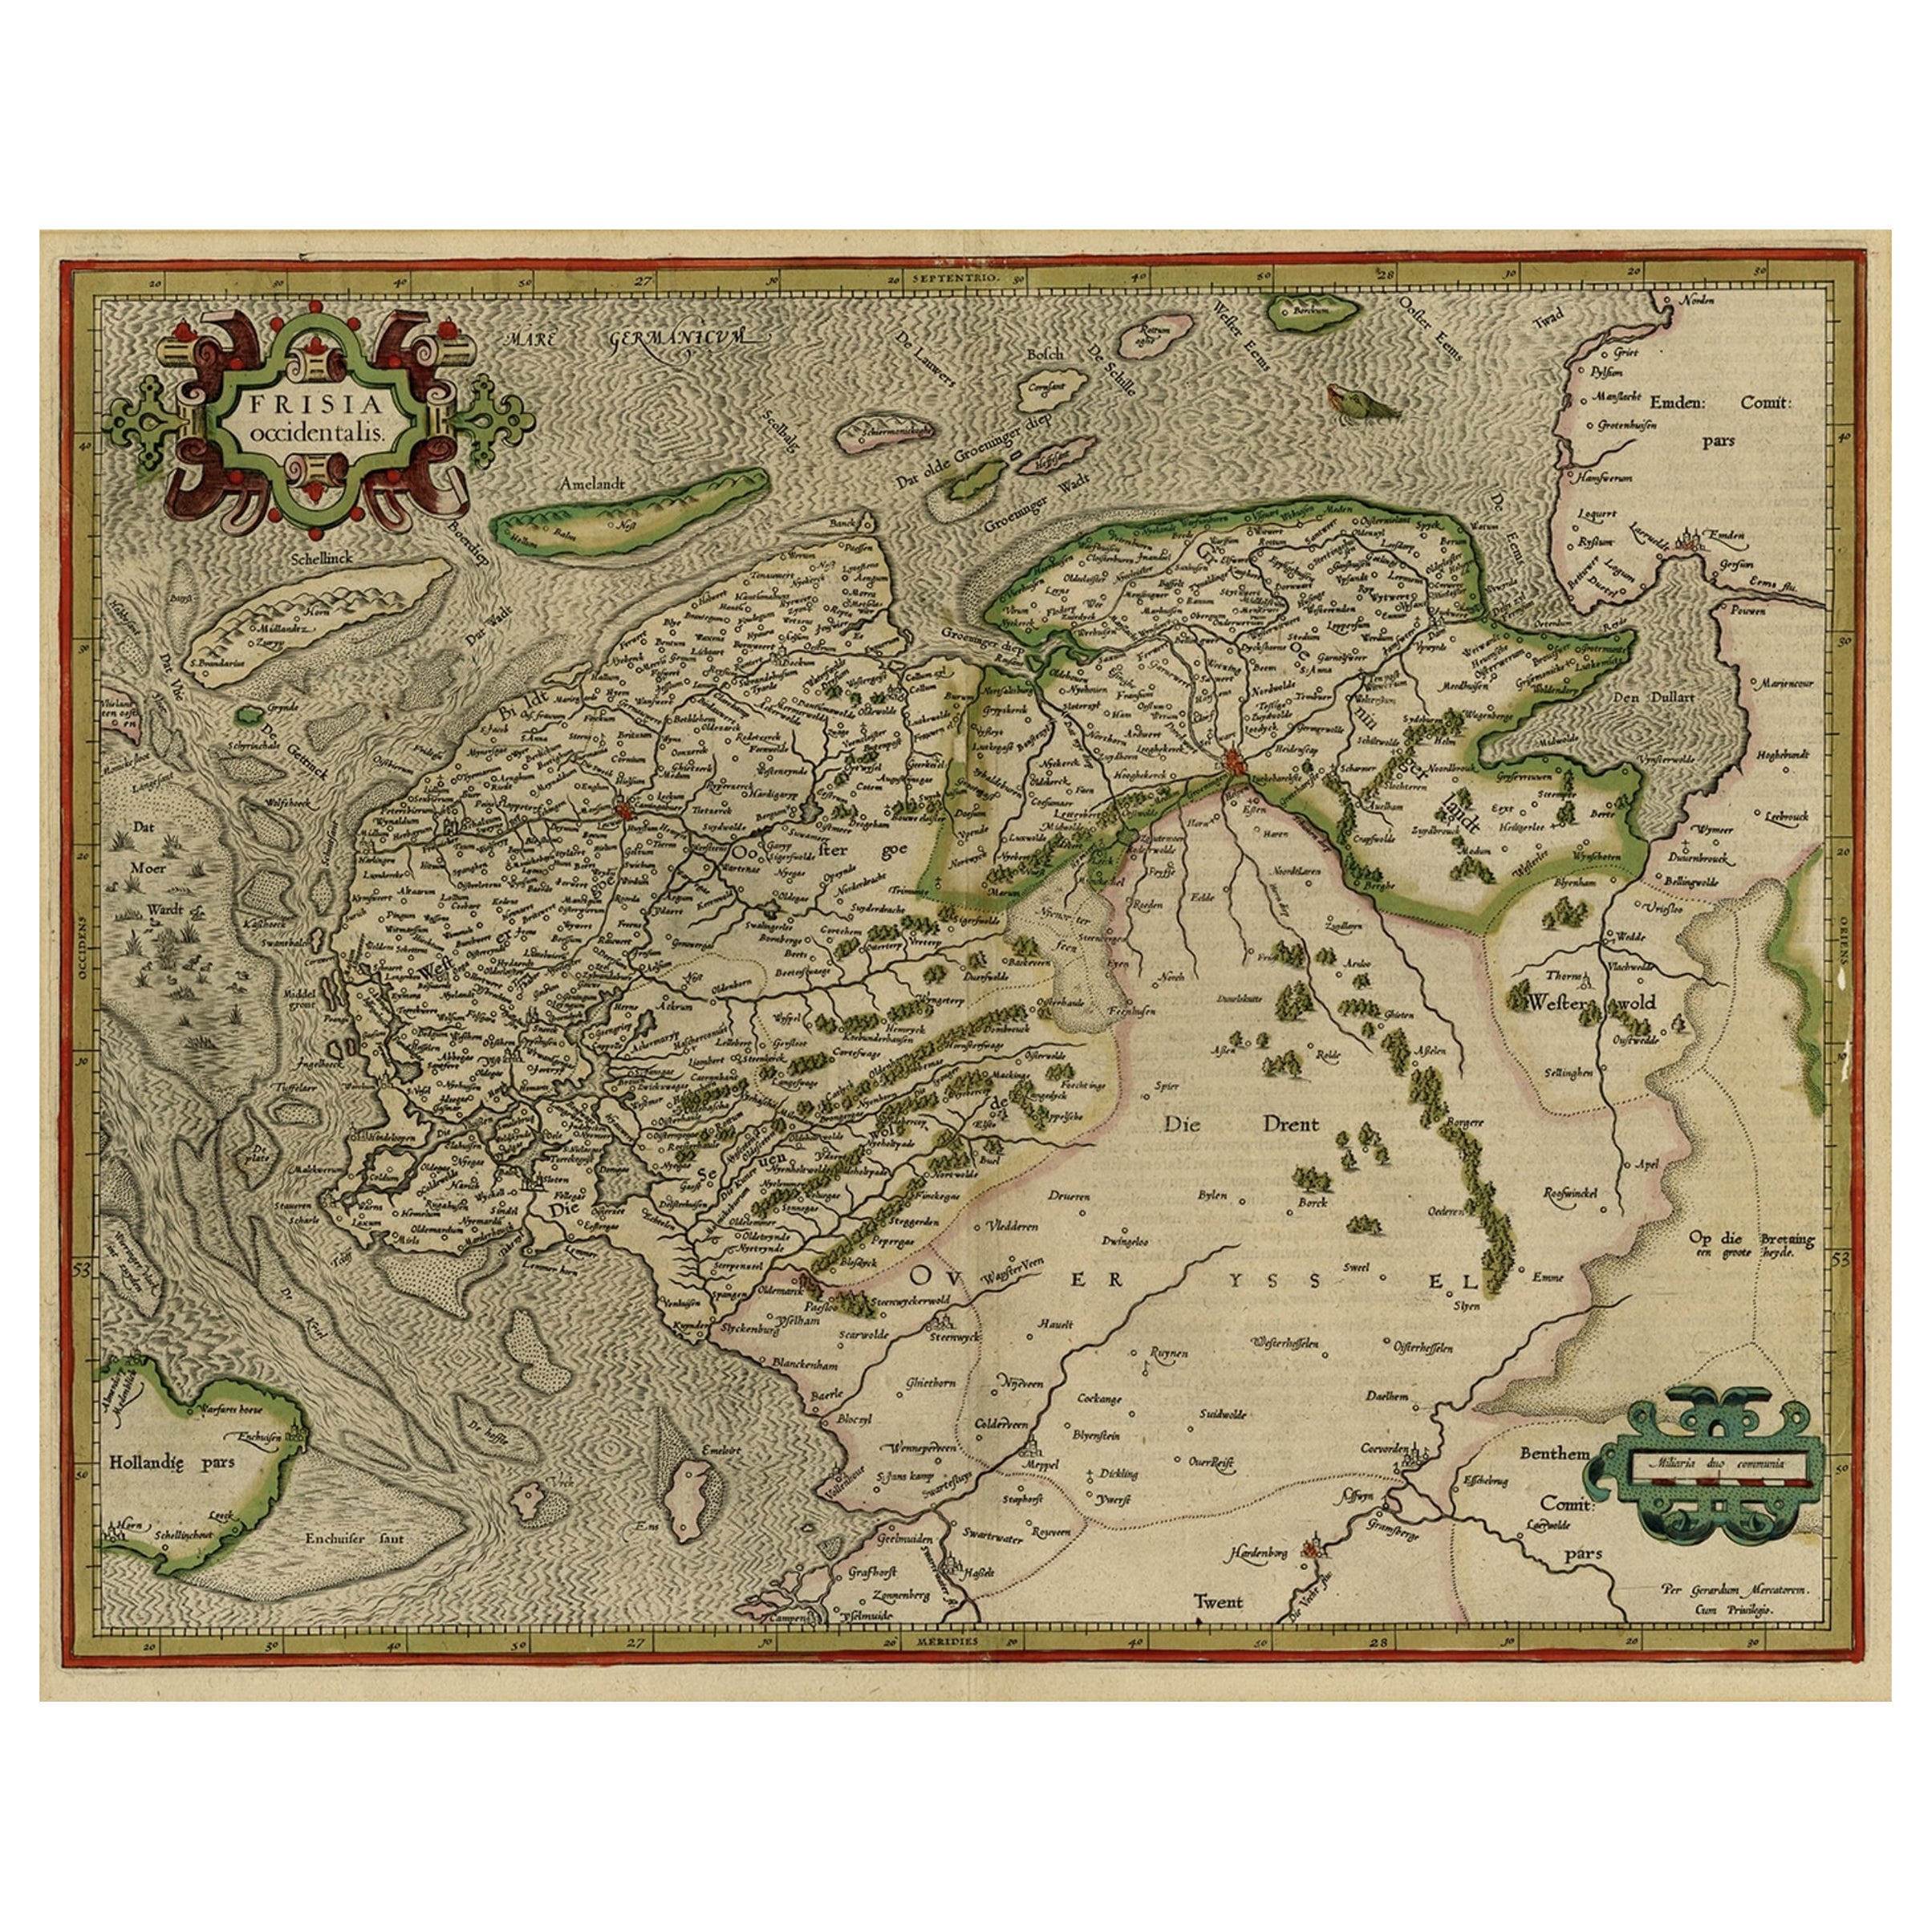 Carte ancienne des provinces néerlandaises du Friesland et de Groningen, 1604